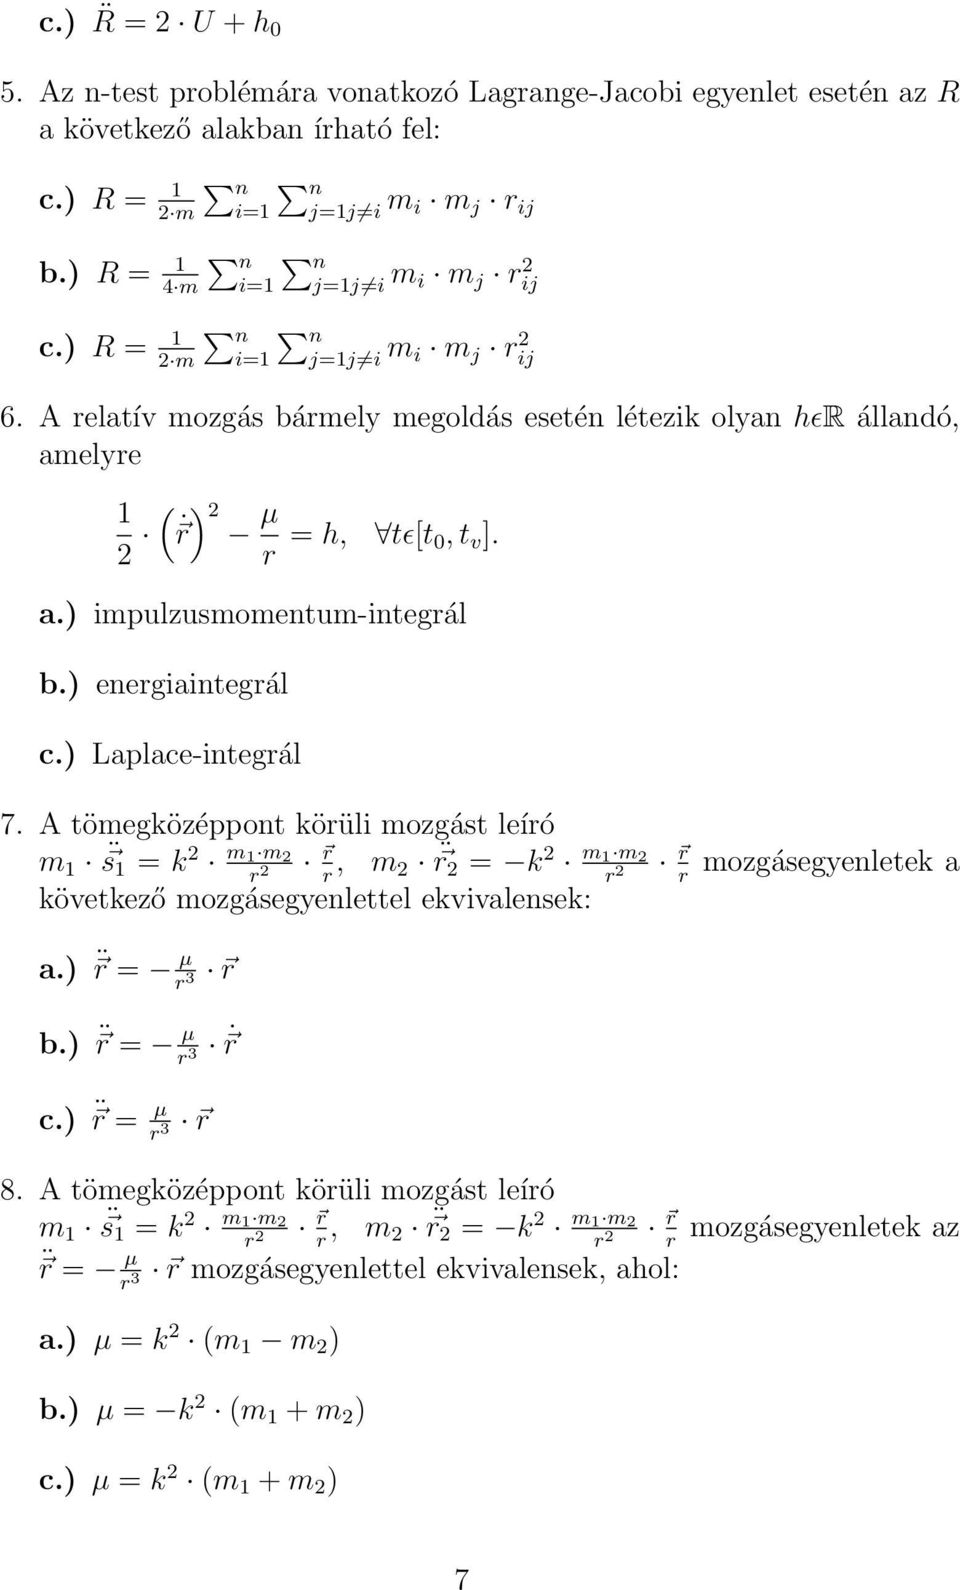 a.) impulzusmomentum-integrál b.) energiaintegrál c.) Laplace-integrál 7.